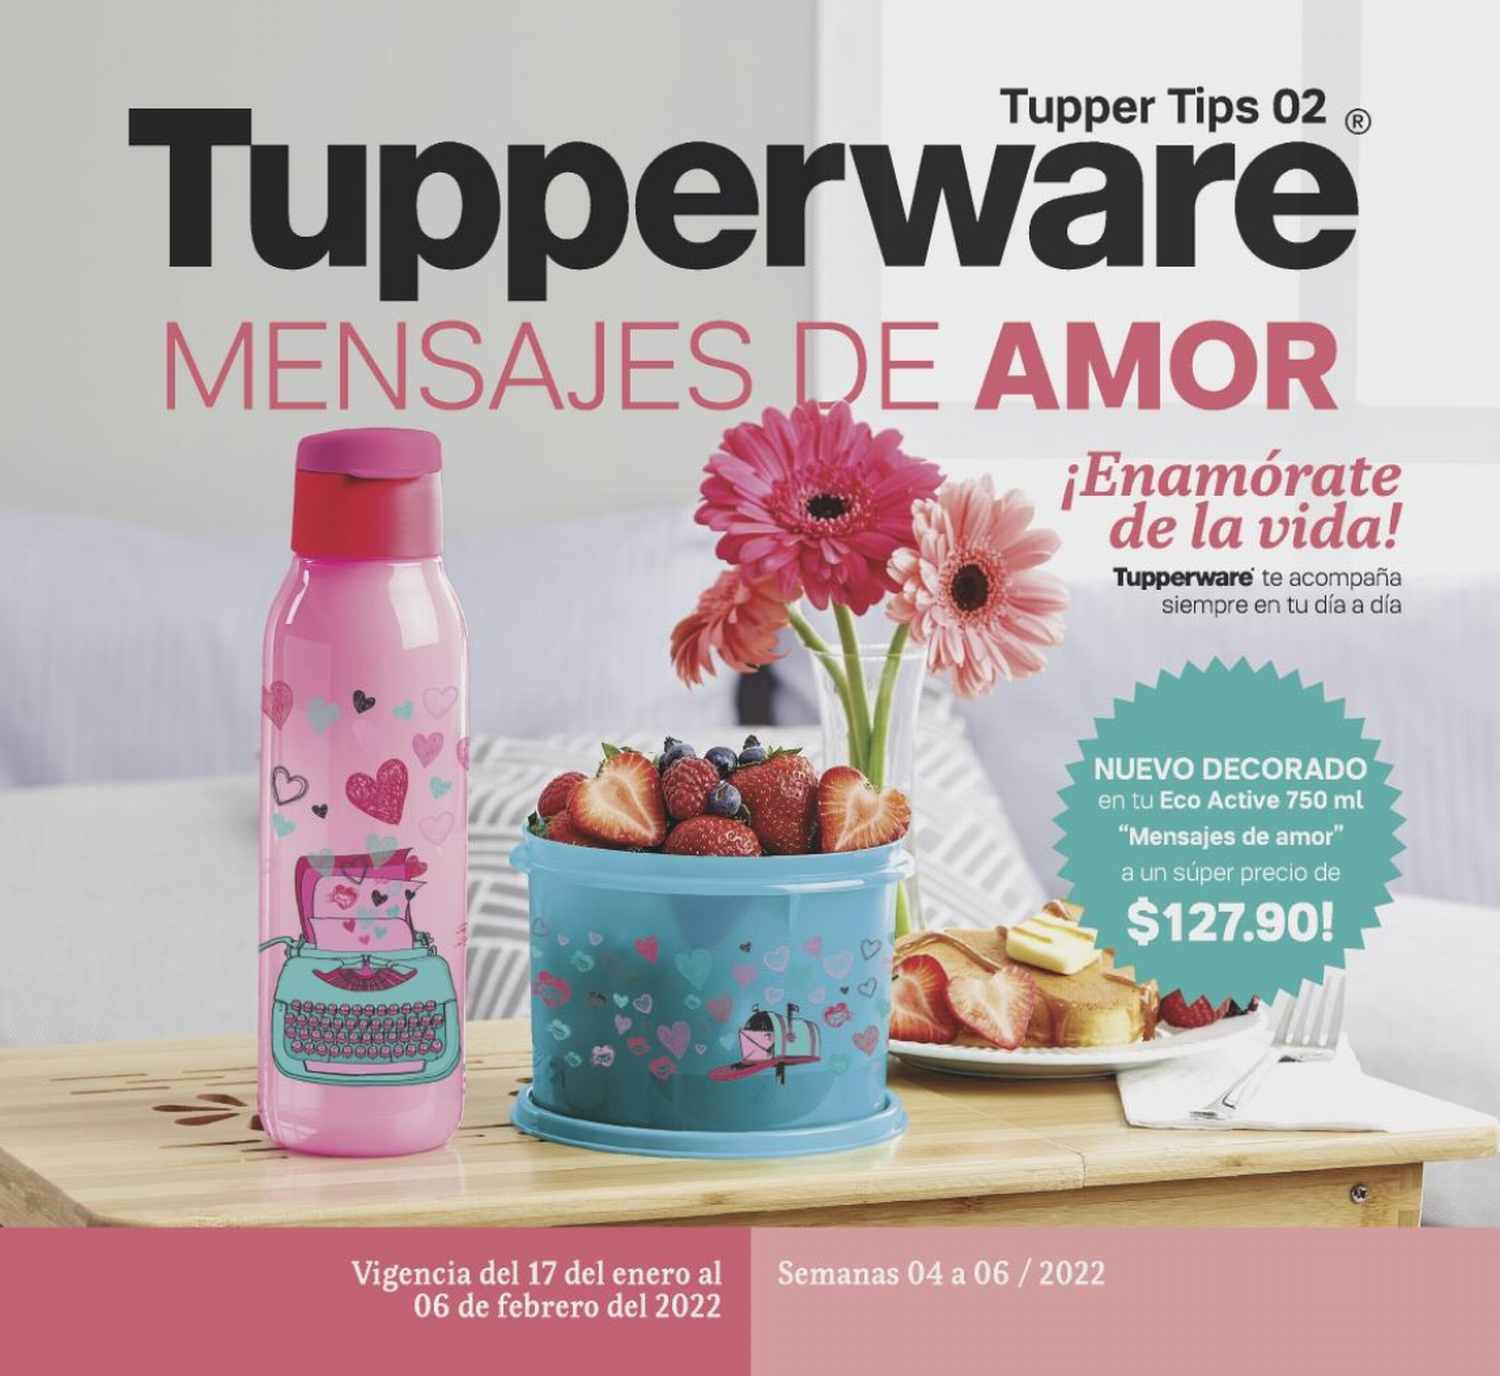 Catálogo Tupperware Tupper Tips 2 2022 México